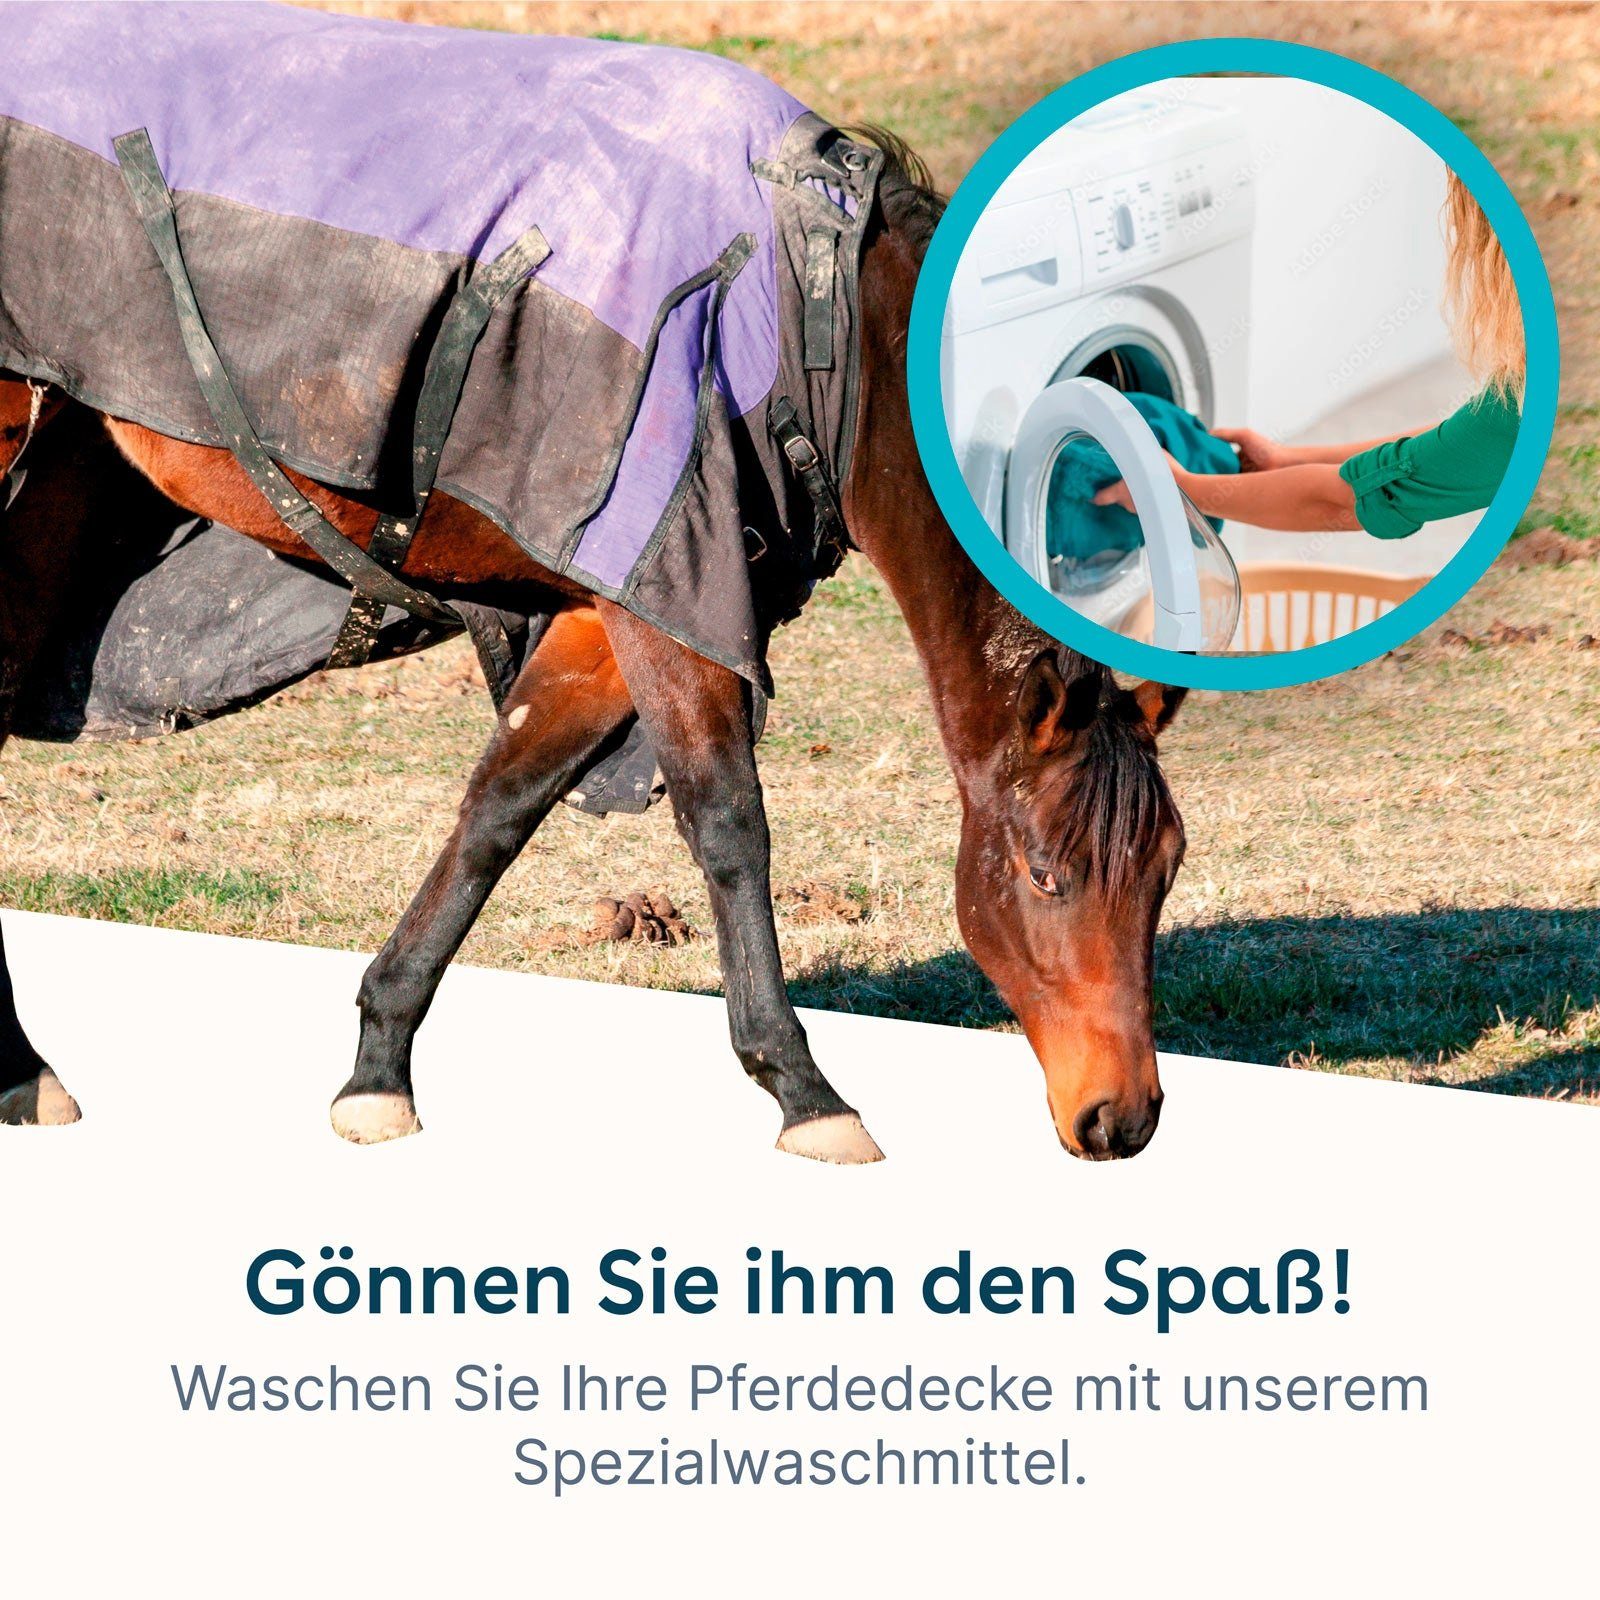 eco:fy Pferdedecken-Waschmittel Spezialwaschmittel schonend (Entfernt Dreck) den wasseranziehenden